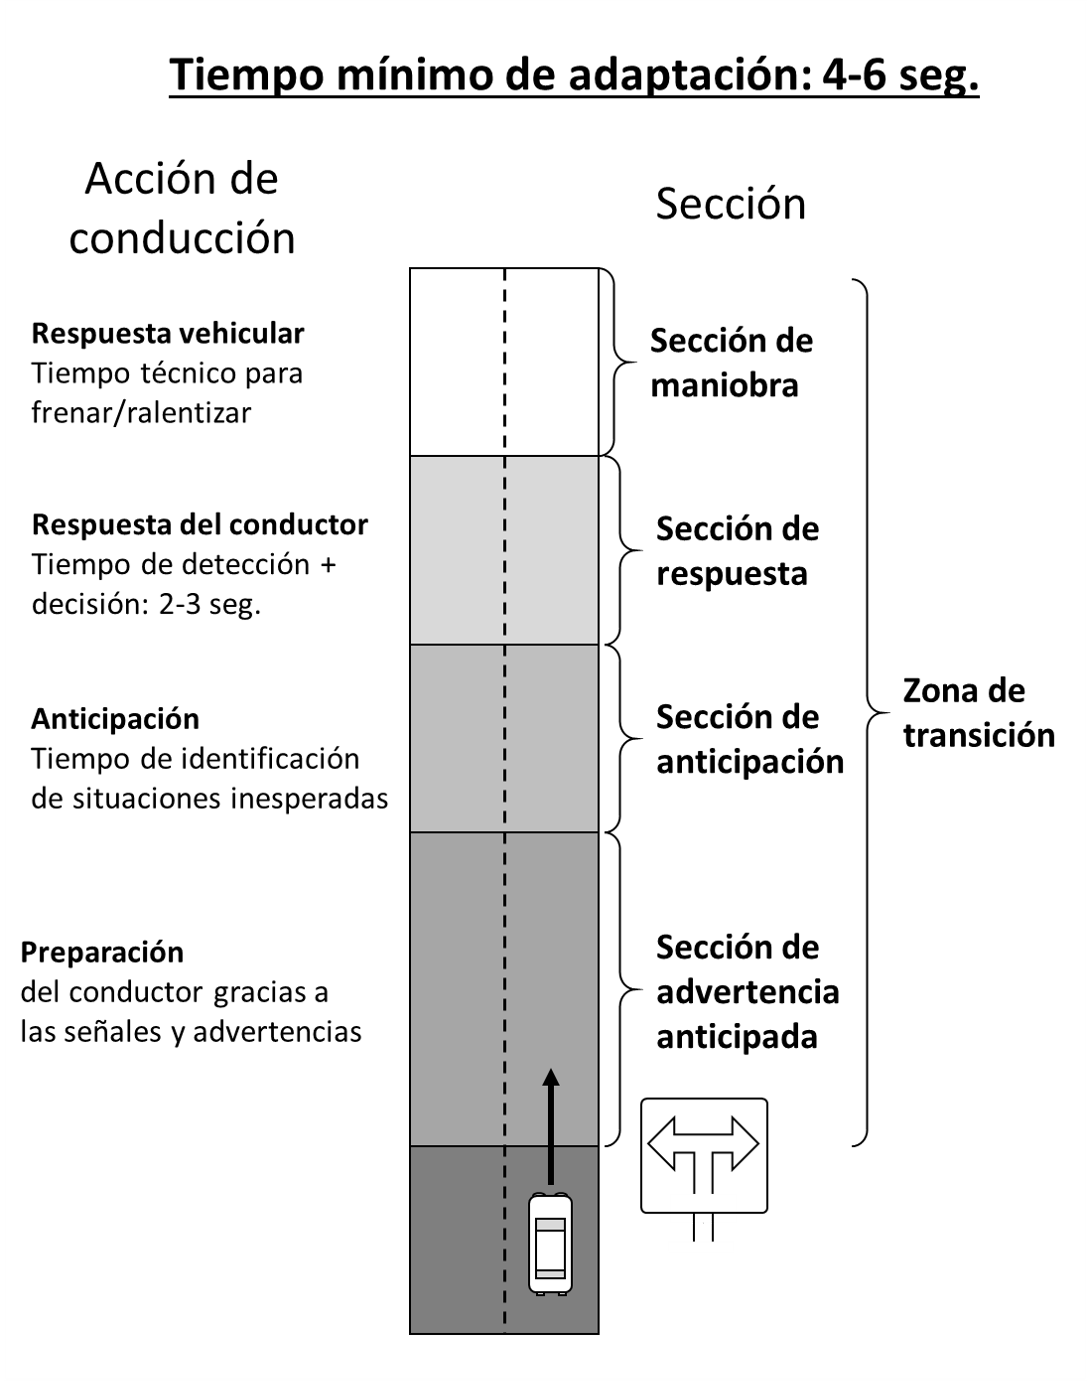 Gráfico 8.1: El requisito de 6 segundos - Nota: Los tiempos para las maniobras indicados en la izquierda de la figura son aproximativos y pueden solaparse - Fuente: PIARC (2015).